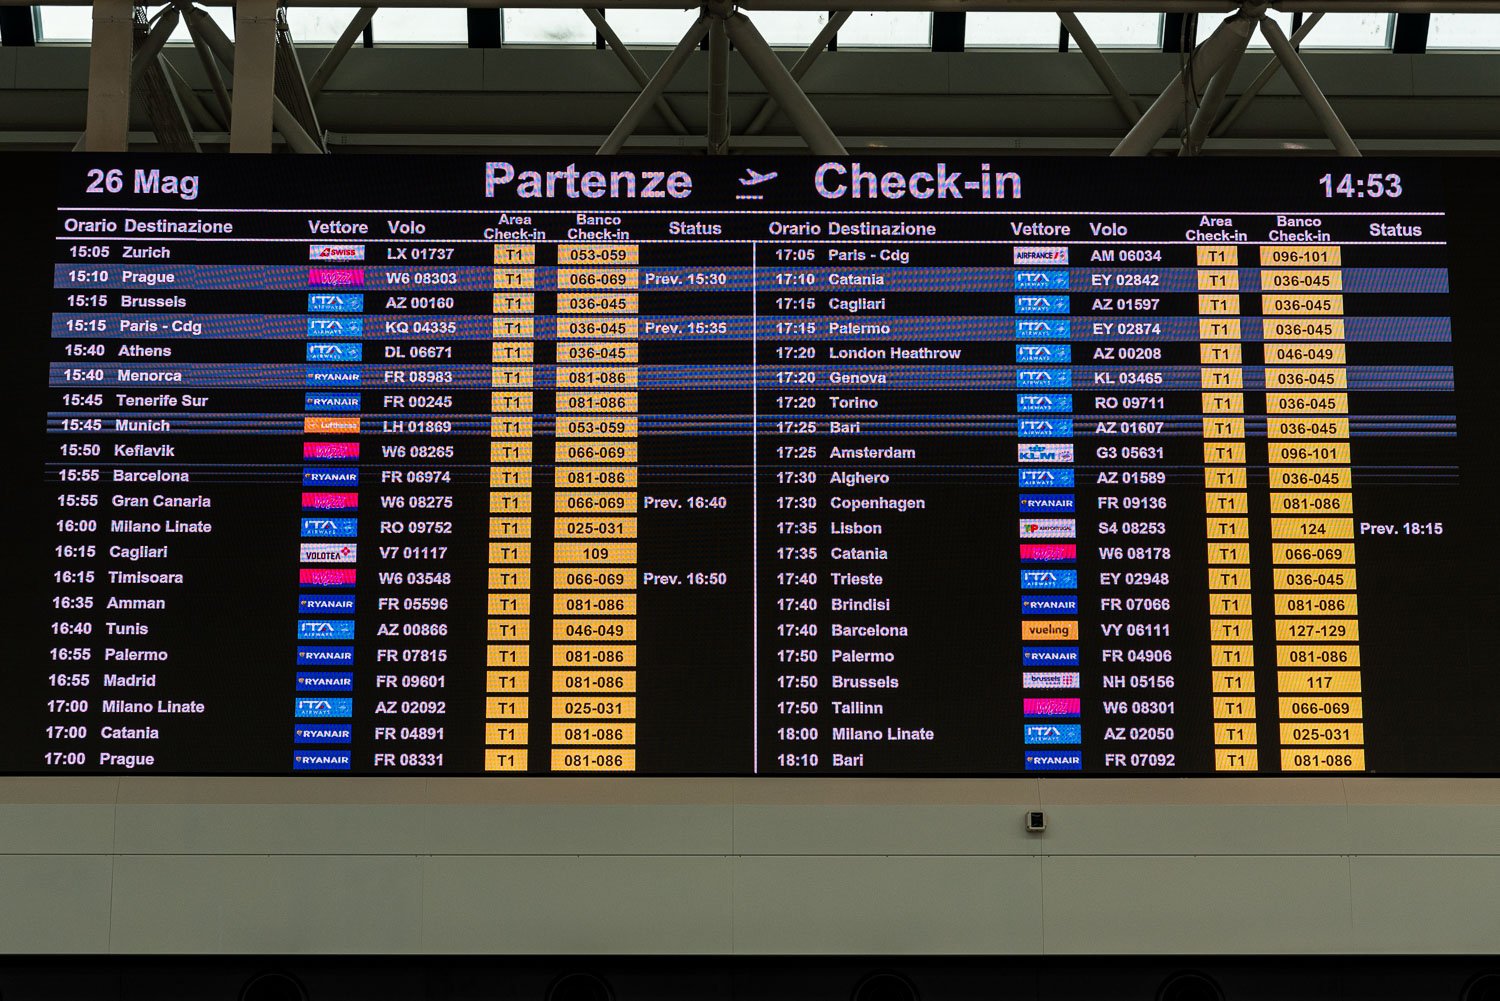 Leonardo da Vinci–Fiumicino Airport - So Many Destinations